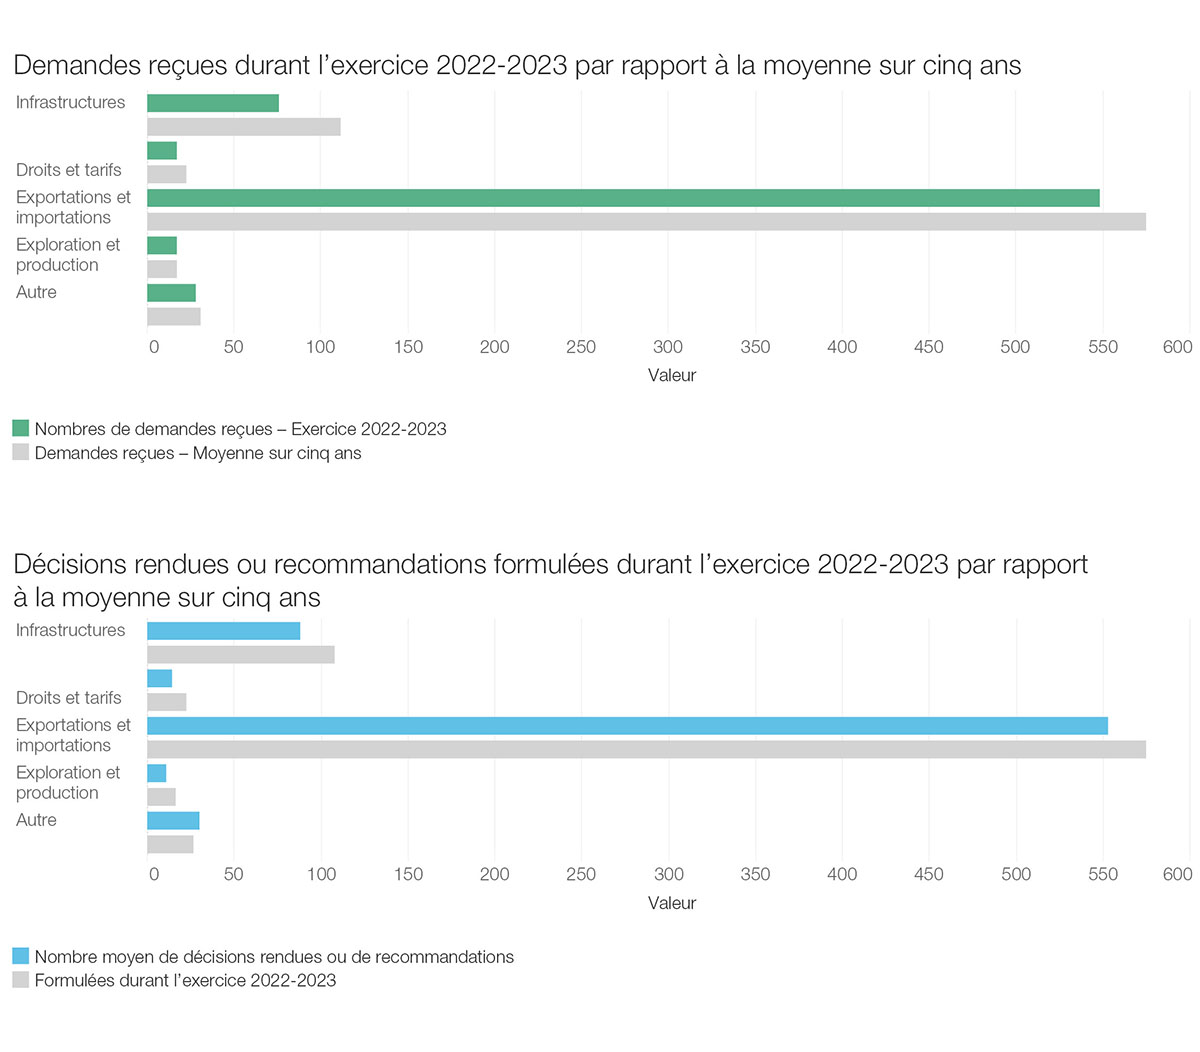 Demandes reçues durant l’exercice 2022–2023 par rapport à la moyenne sur cinq ans et décisions rendues ou recommandations formulées durant l’exercice 2022-2023 par rapport à la moyenne sur cinq ans